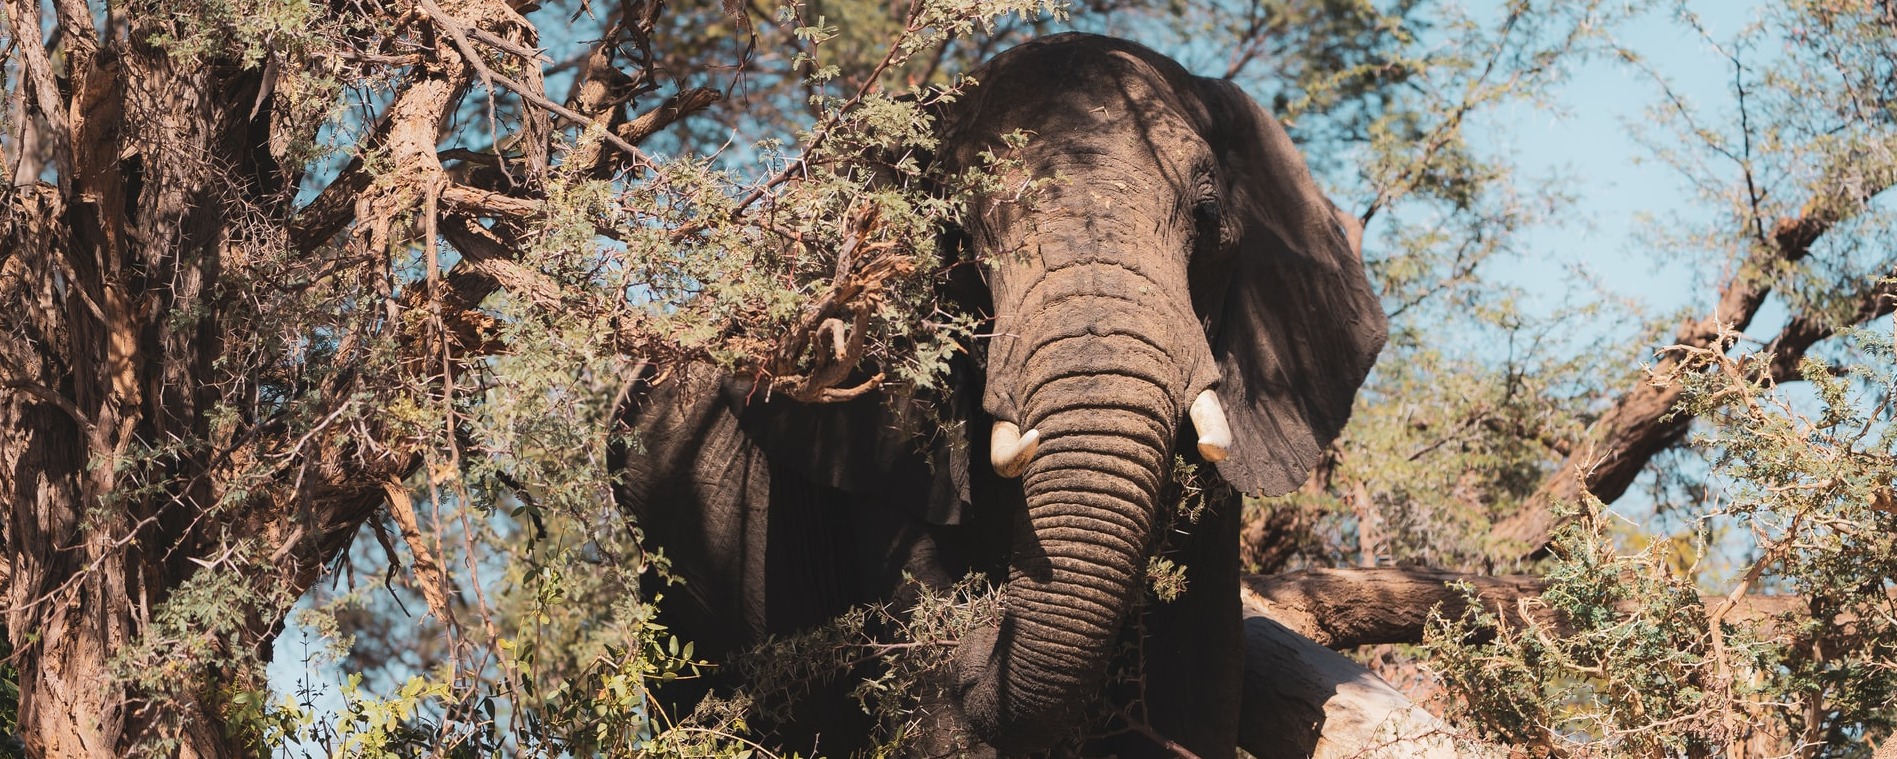 Wüstenelefant Namibias versteckt in den Akazien des Damaralandes, vermutlich in einem der Trockenflussbetten